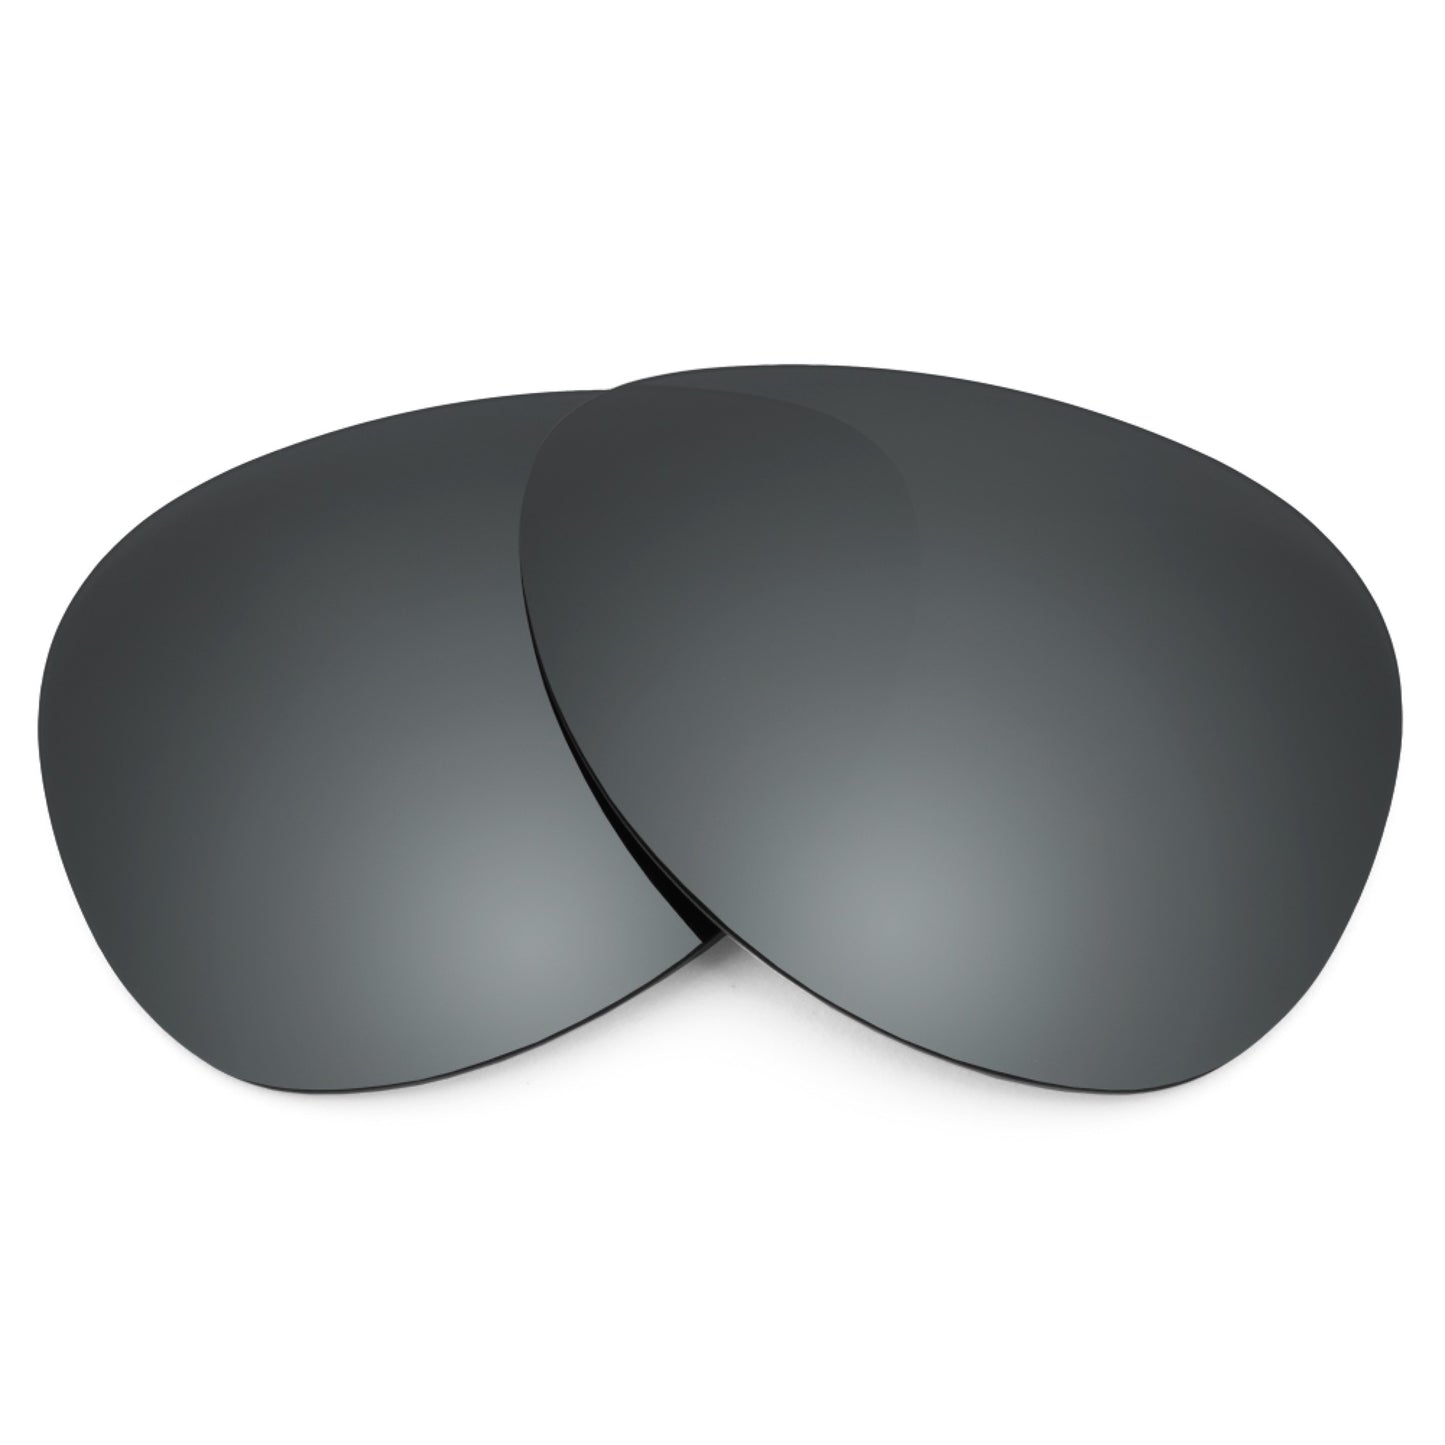 Revant replacement lenses for Oakley Crosshair 1.0 Non-Polarized Black Chrome